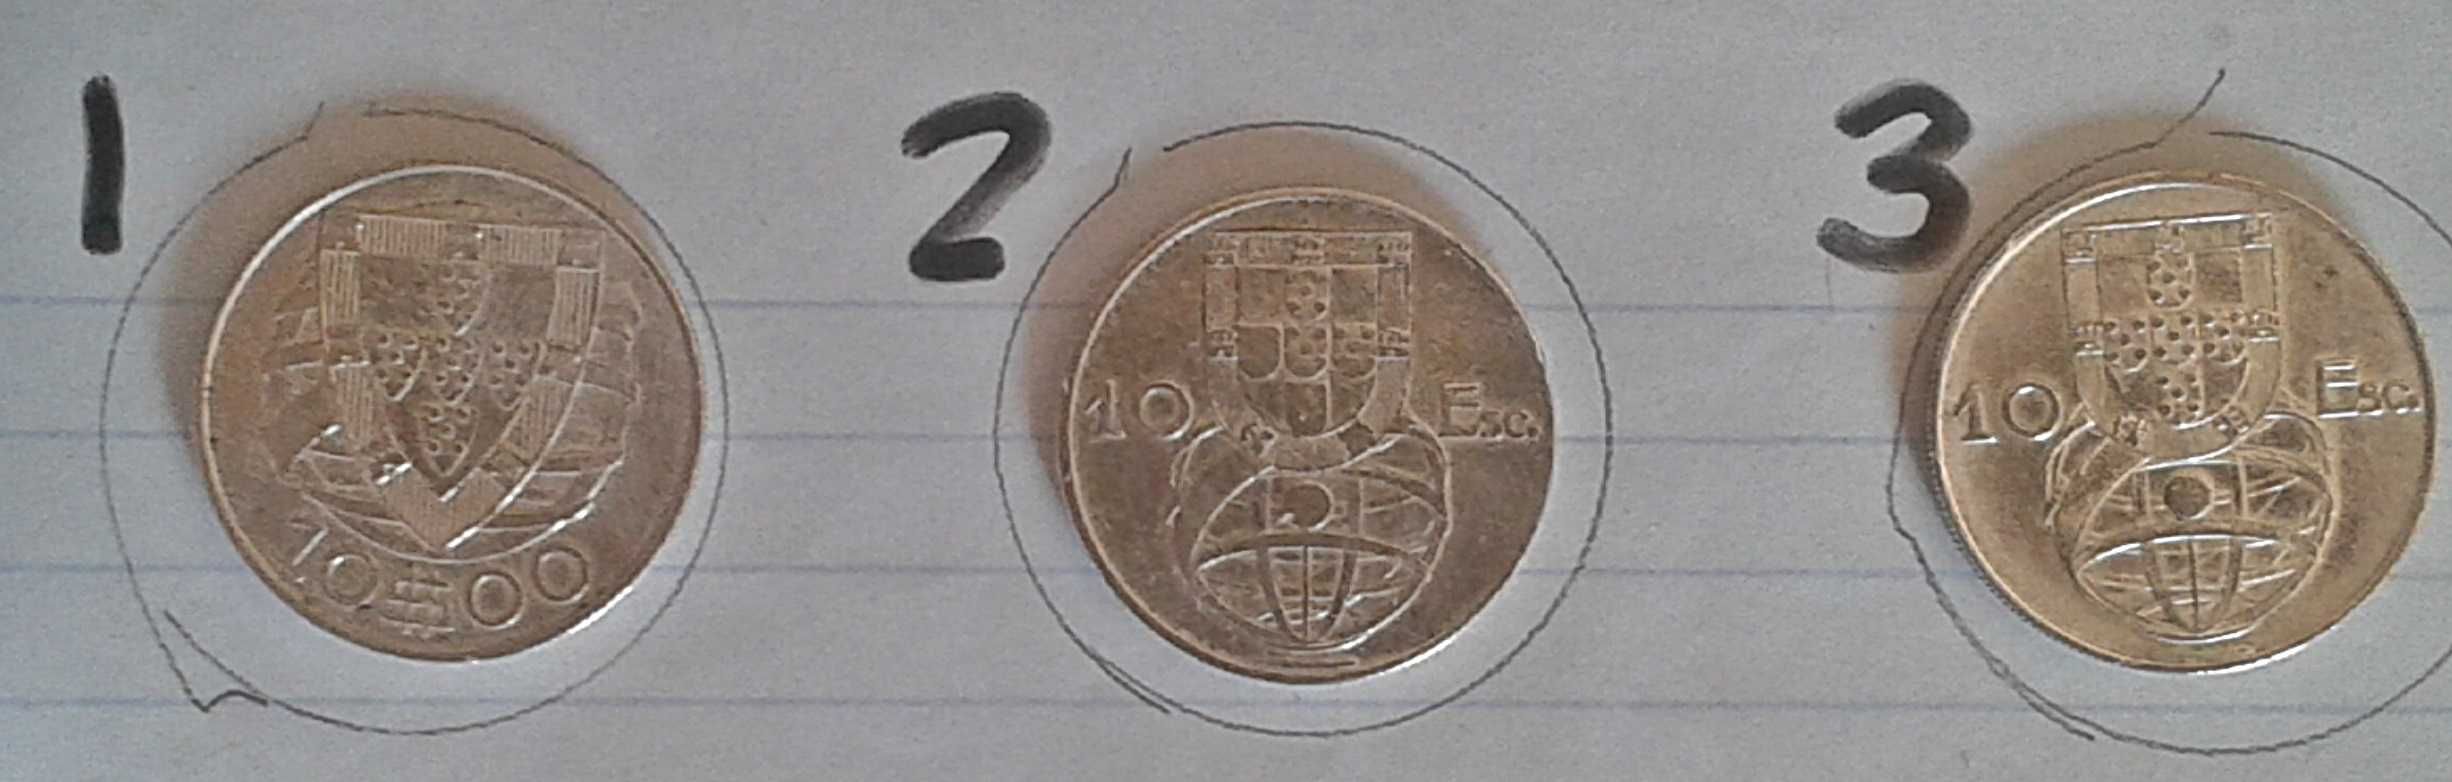 Moedas PRATA 10 escudos Portugueses. Caravela Silver Coin